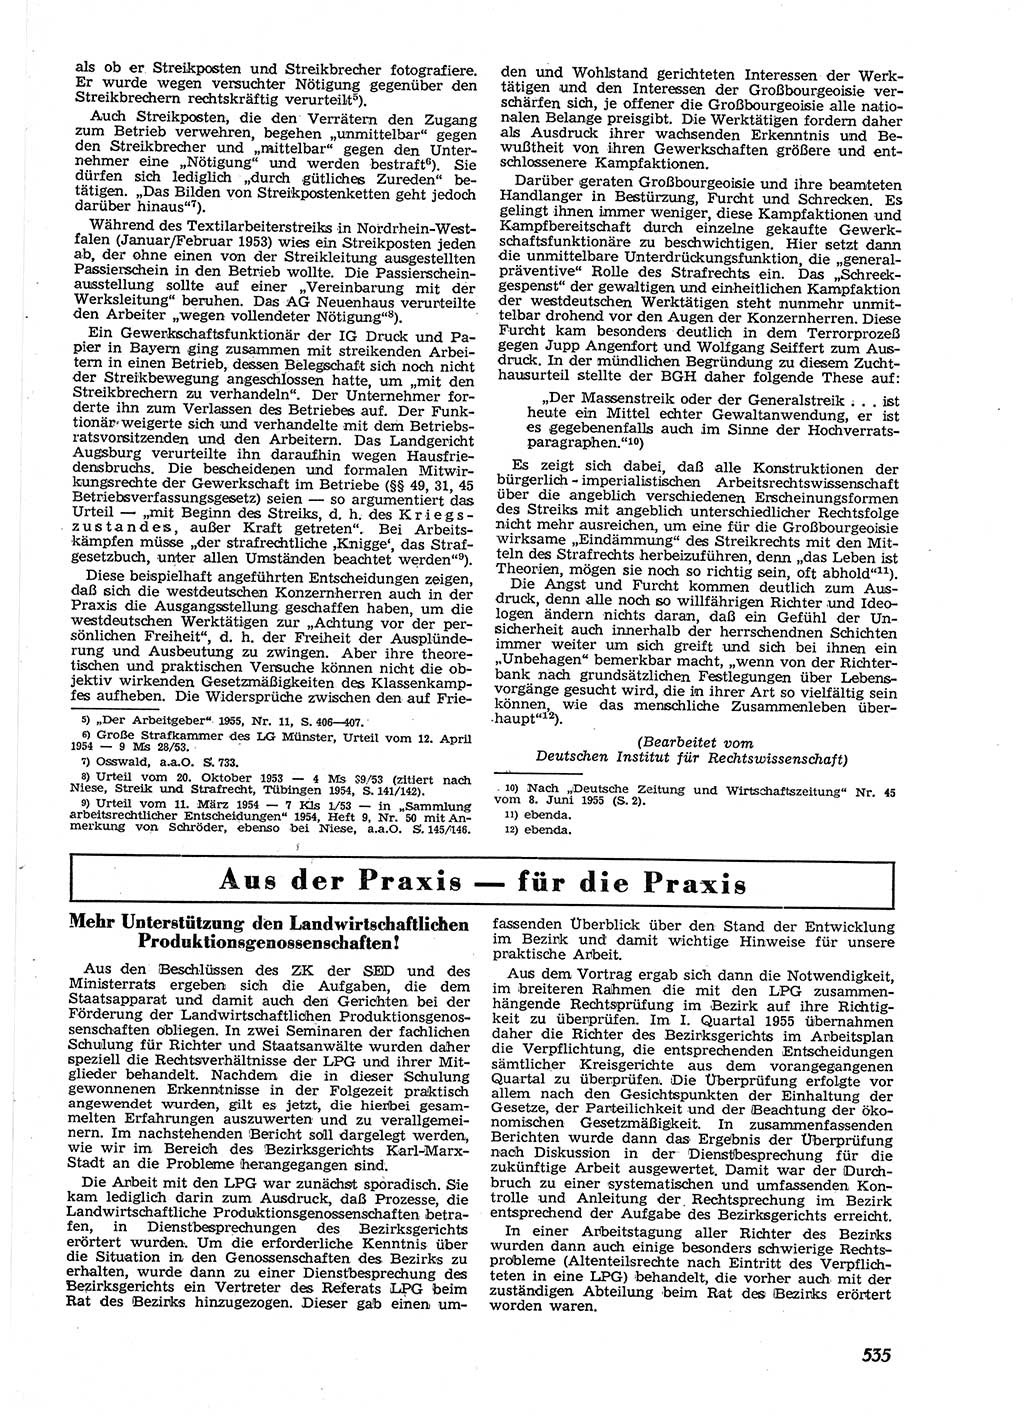 Neue Justiz (NJ), Zeitschrift für Recht und Rechtswissenschaft [Deutsche Demokratische Republik (DDR)], 9. Jahrgang 1955, Seite 535 (NJ DDR 1955, S. 535)